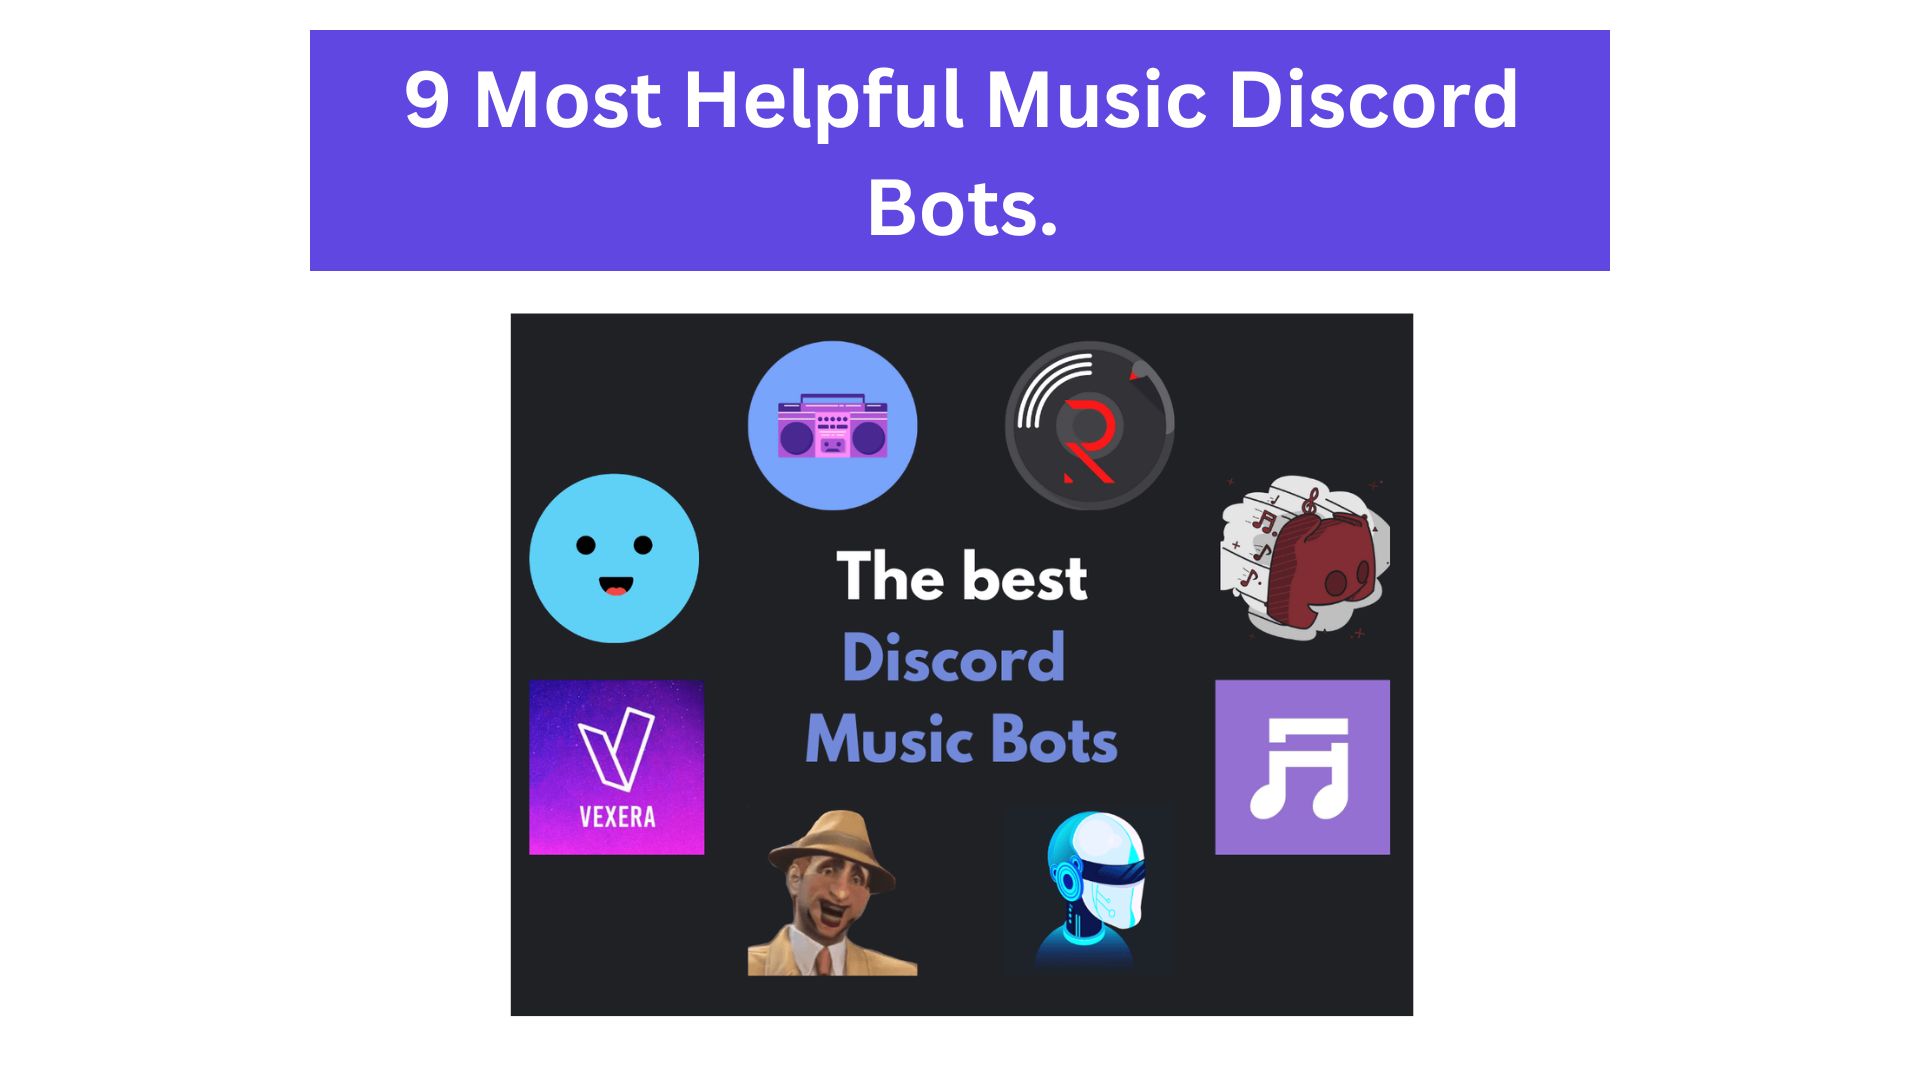 9 music bots